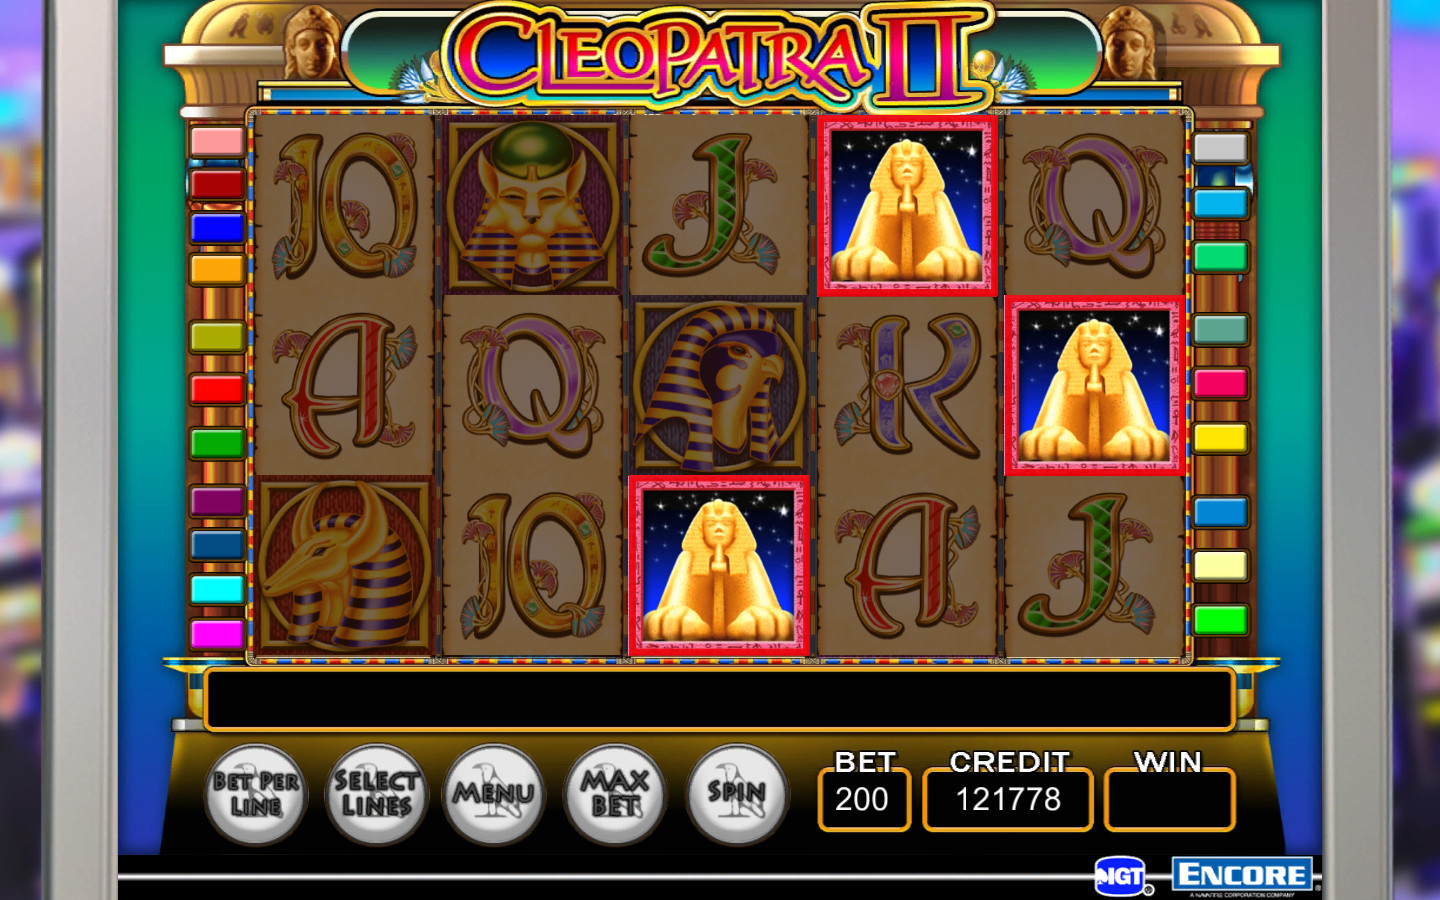 Jackpot magic slots free spins